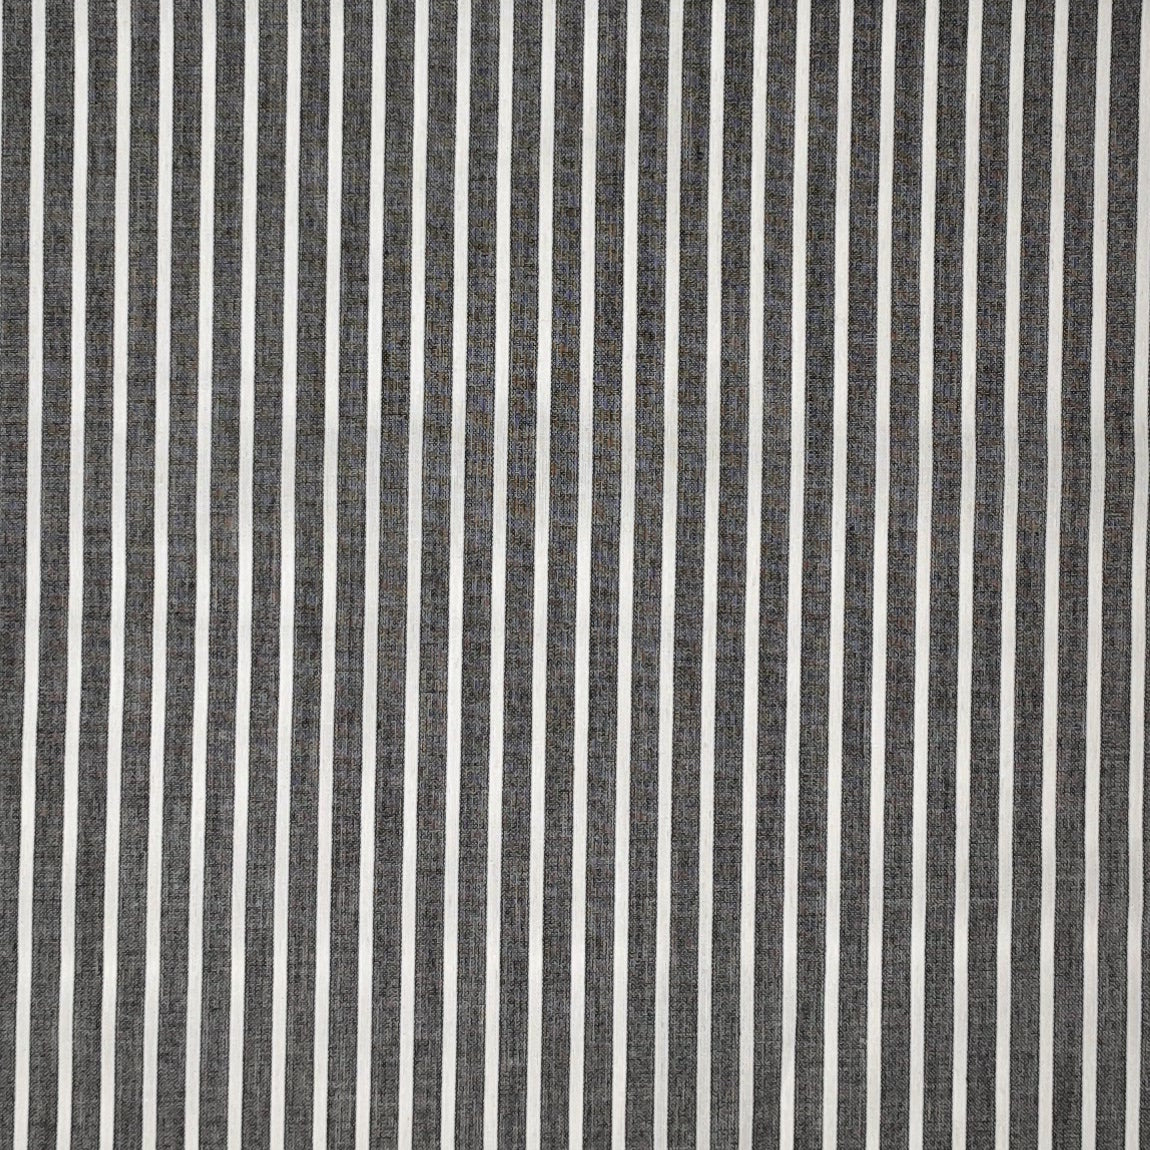 Black/Ivory Stripes Cotton Lawn